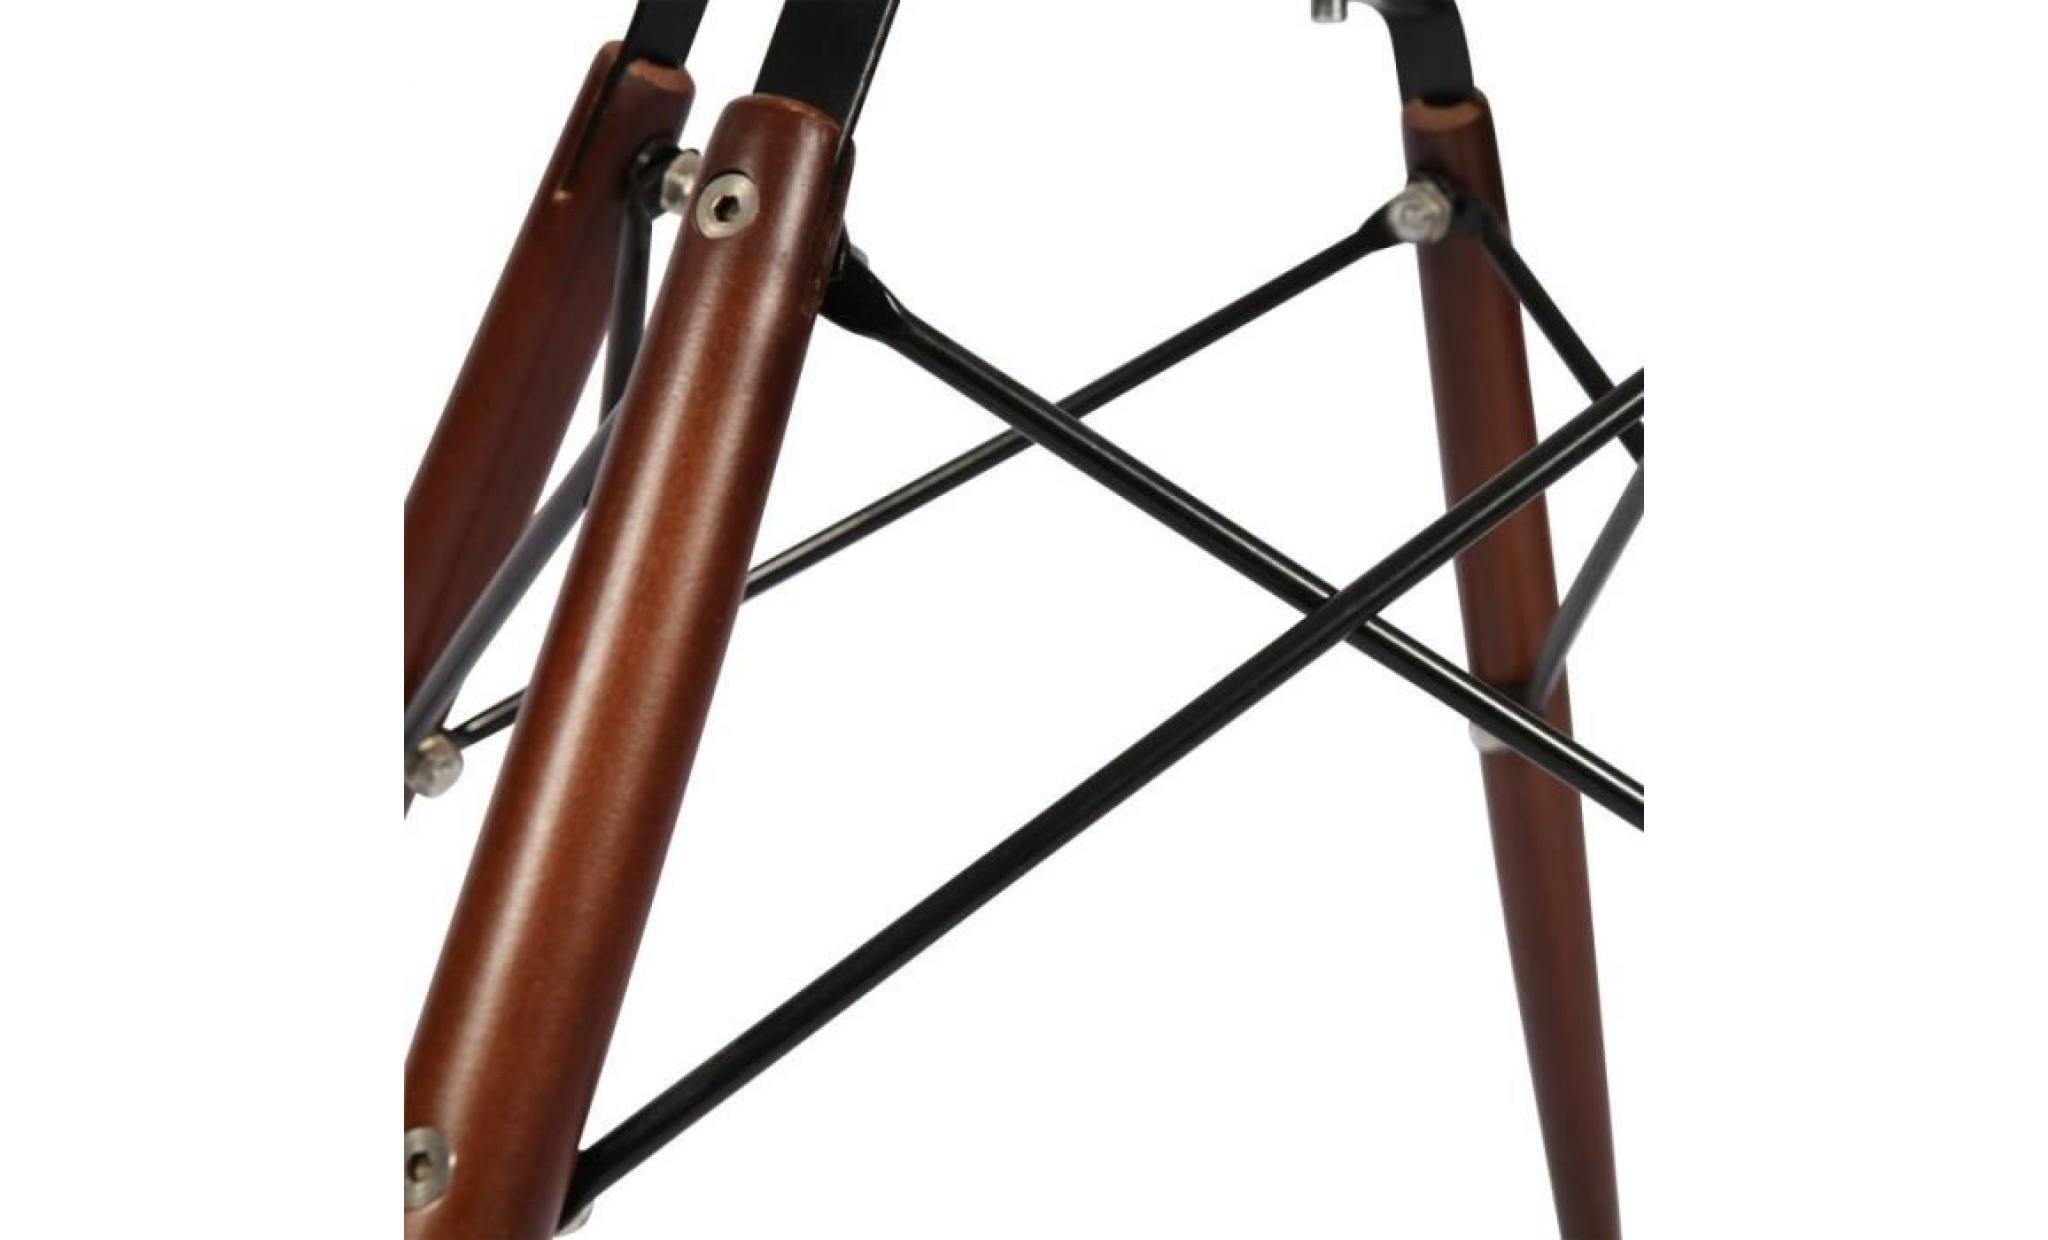 1 x fauteuil design retro style charles eames daw hauteur 48cm pieds en bois noir assise ivoire mobistyl® pas cher